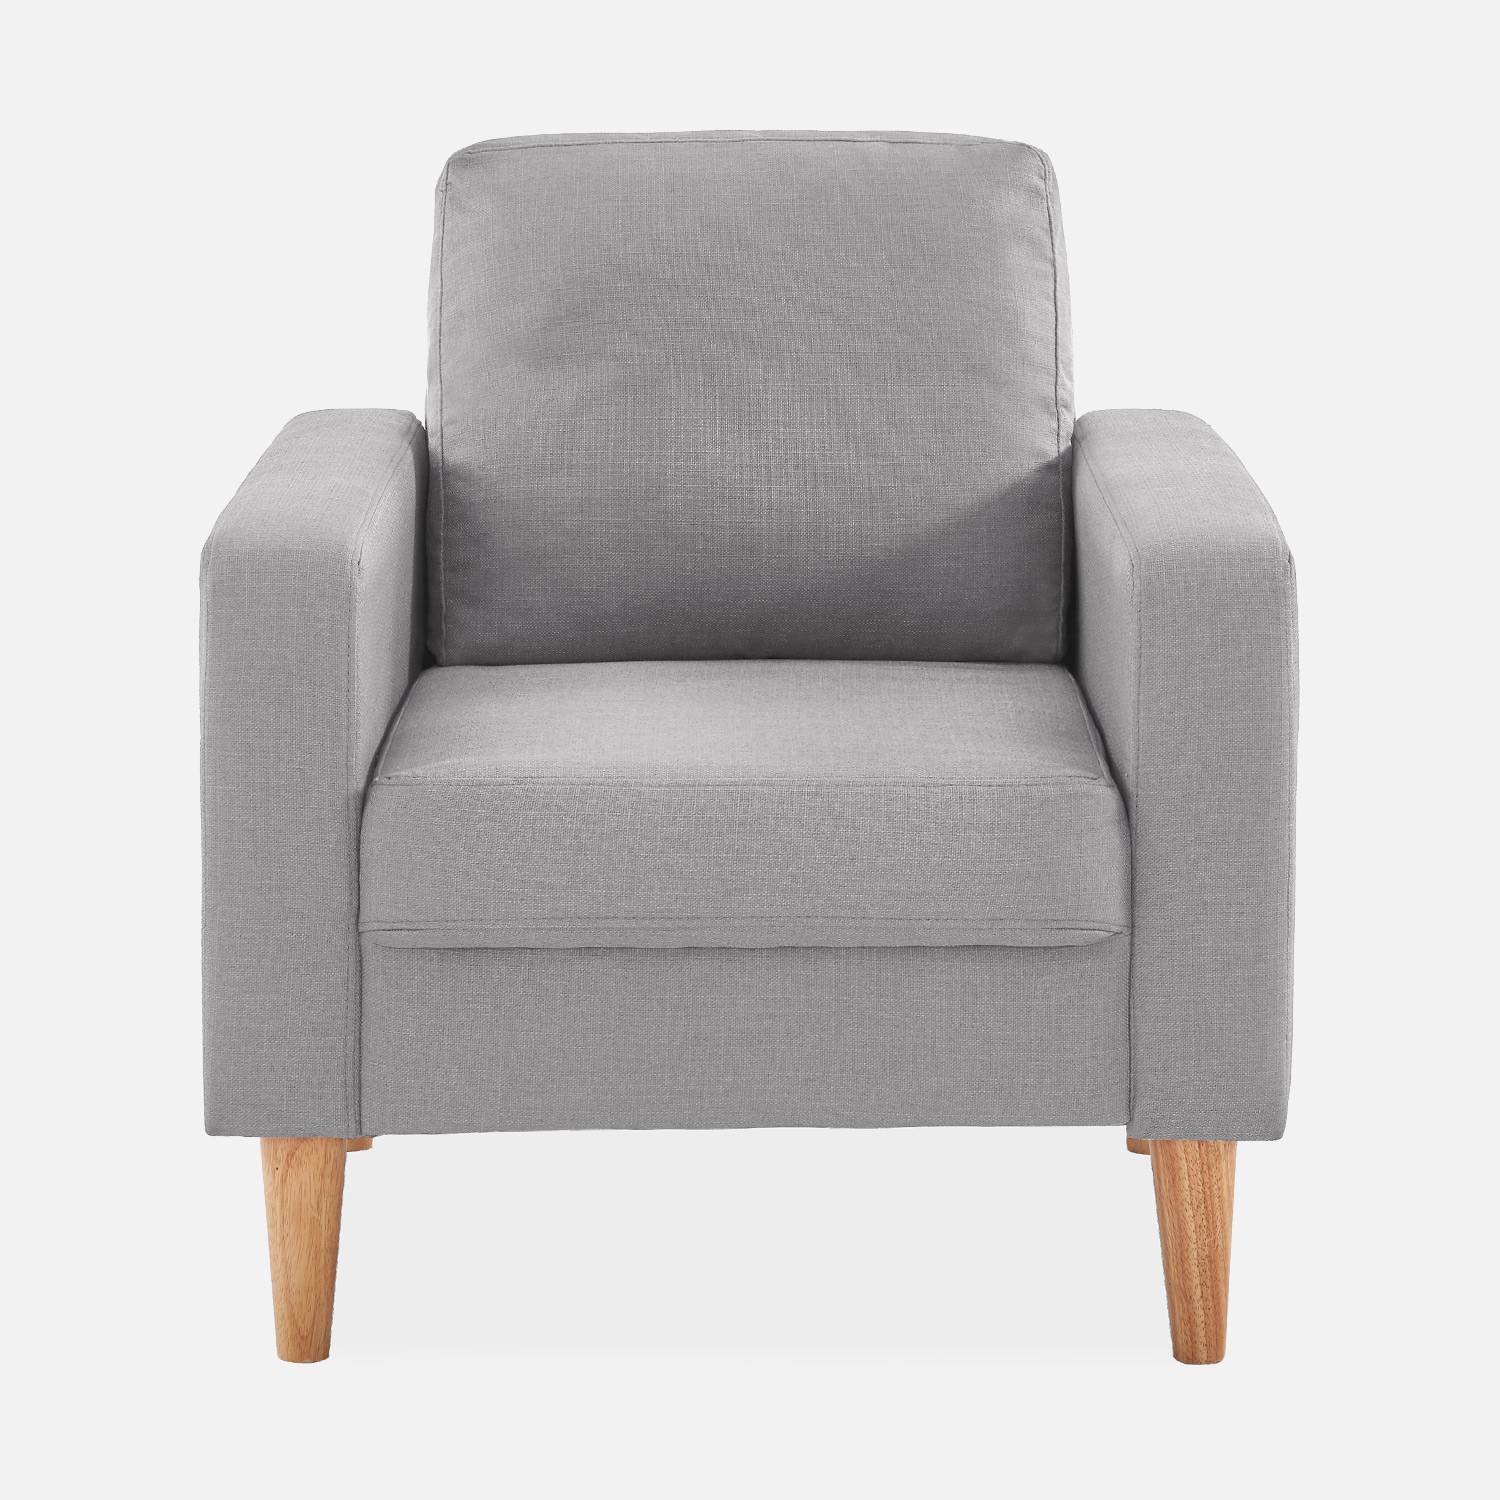 Lichtgrijs stoffen zetel - Bjorn - 1-zits sofa met houten poten, Scandinavische stijl Photo3